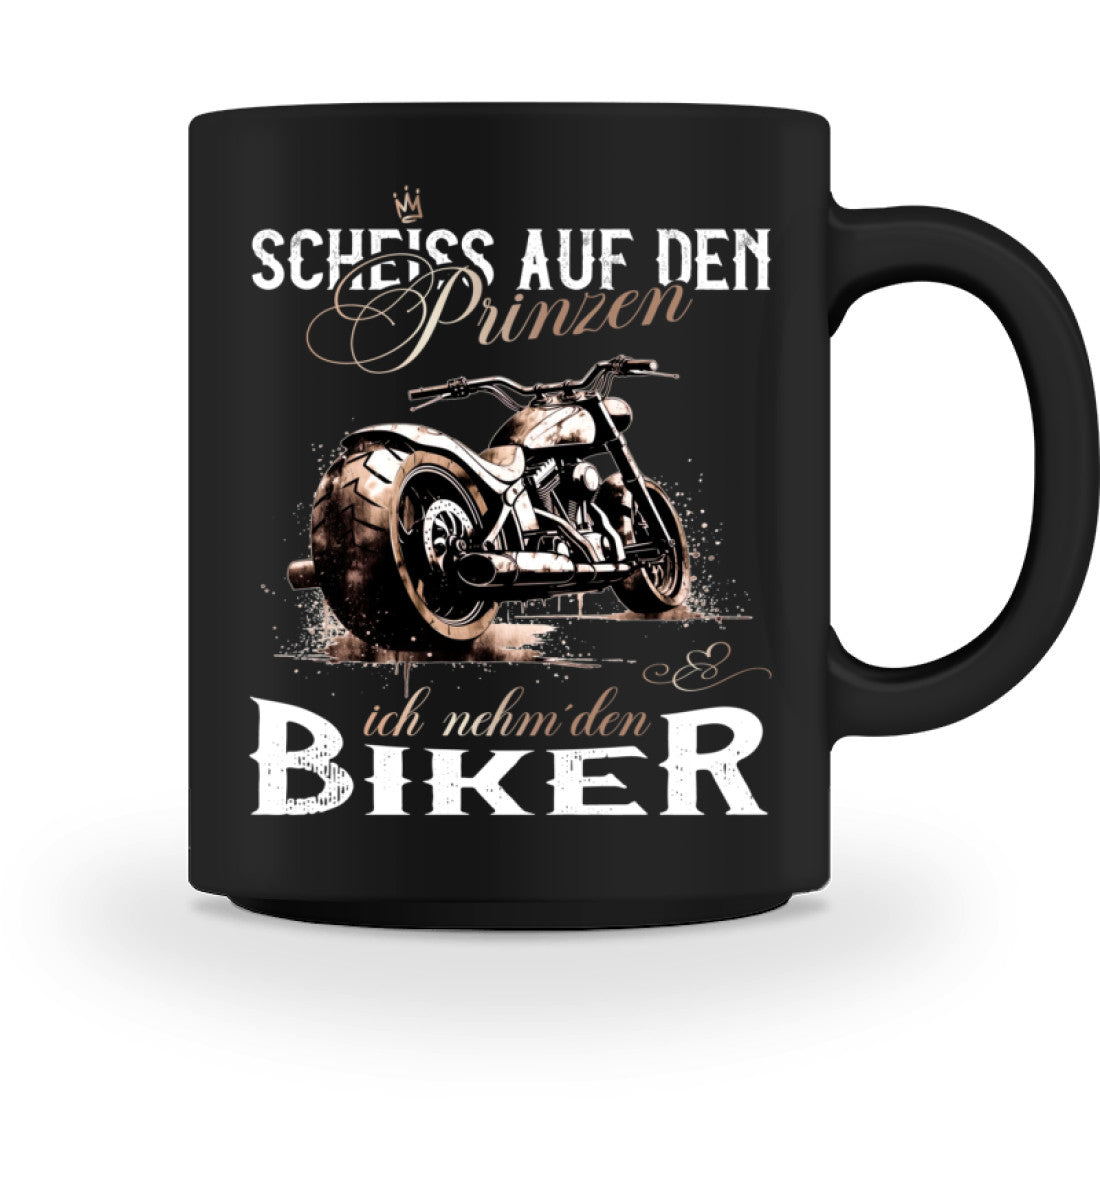 Eine Tasse für Motorradfahrer von Wingbikers, mit dem beidseitigen Aufdruck, Scheiß auf den Prinzen, ich nehm' den Biker, in schwarz.  